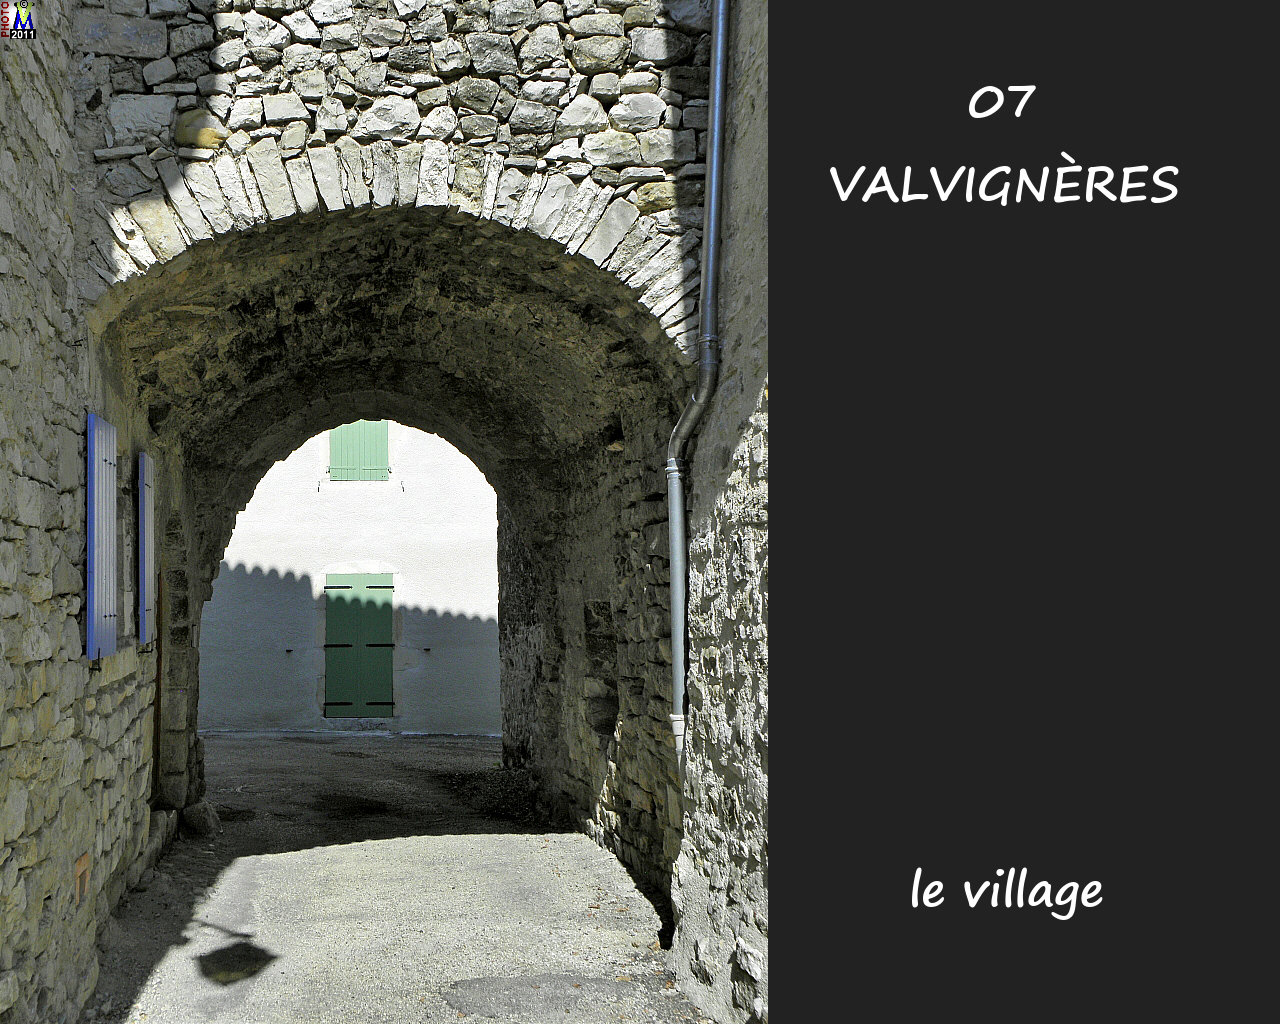 07VALVIGNERES_village_112.jpg